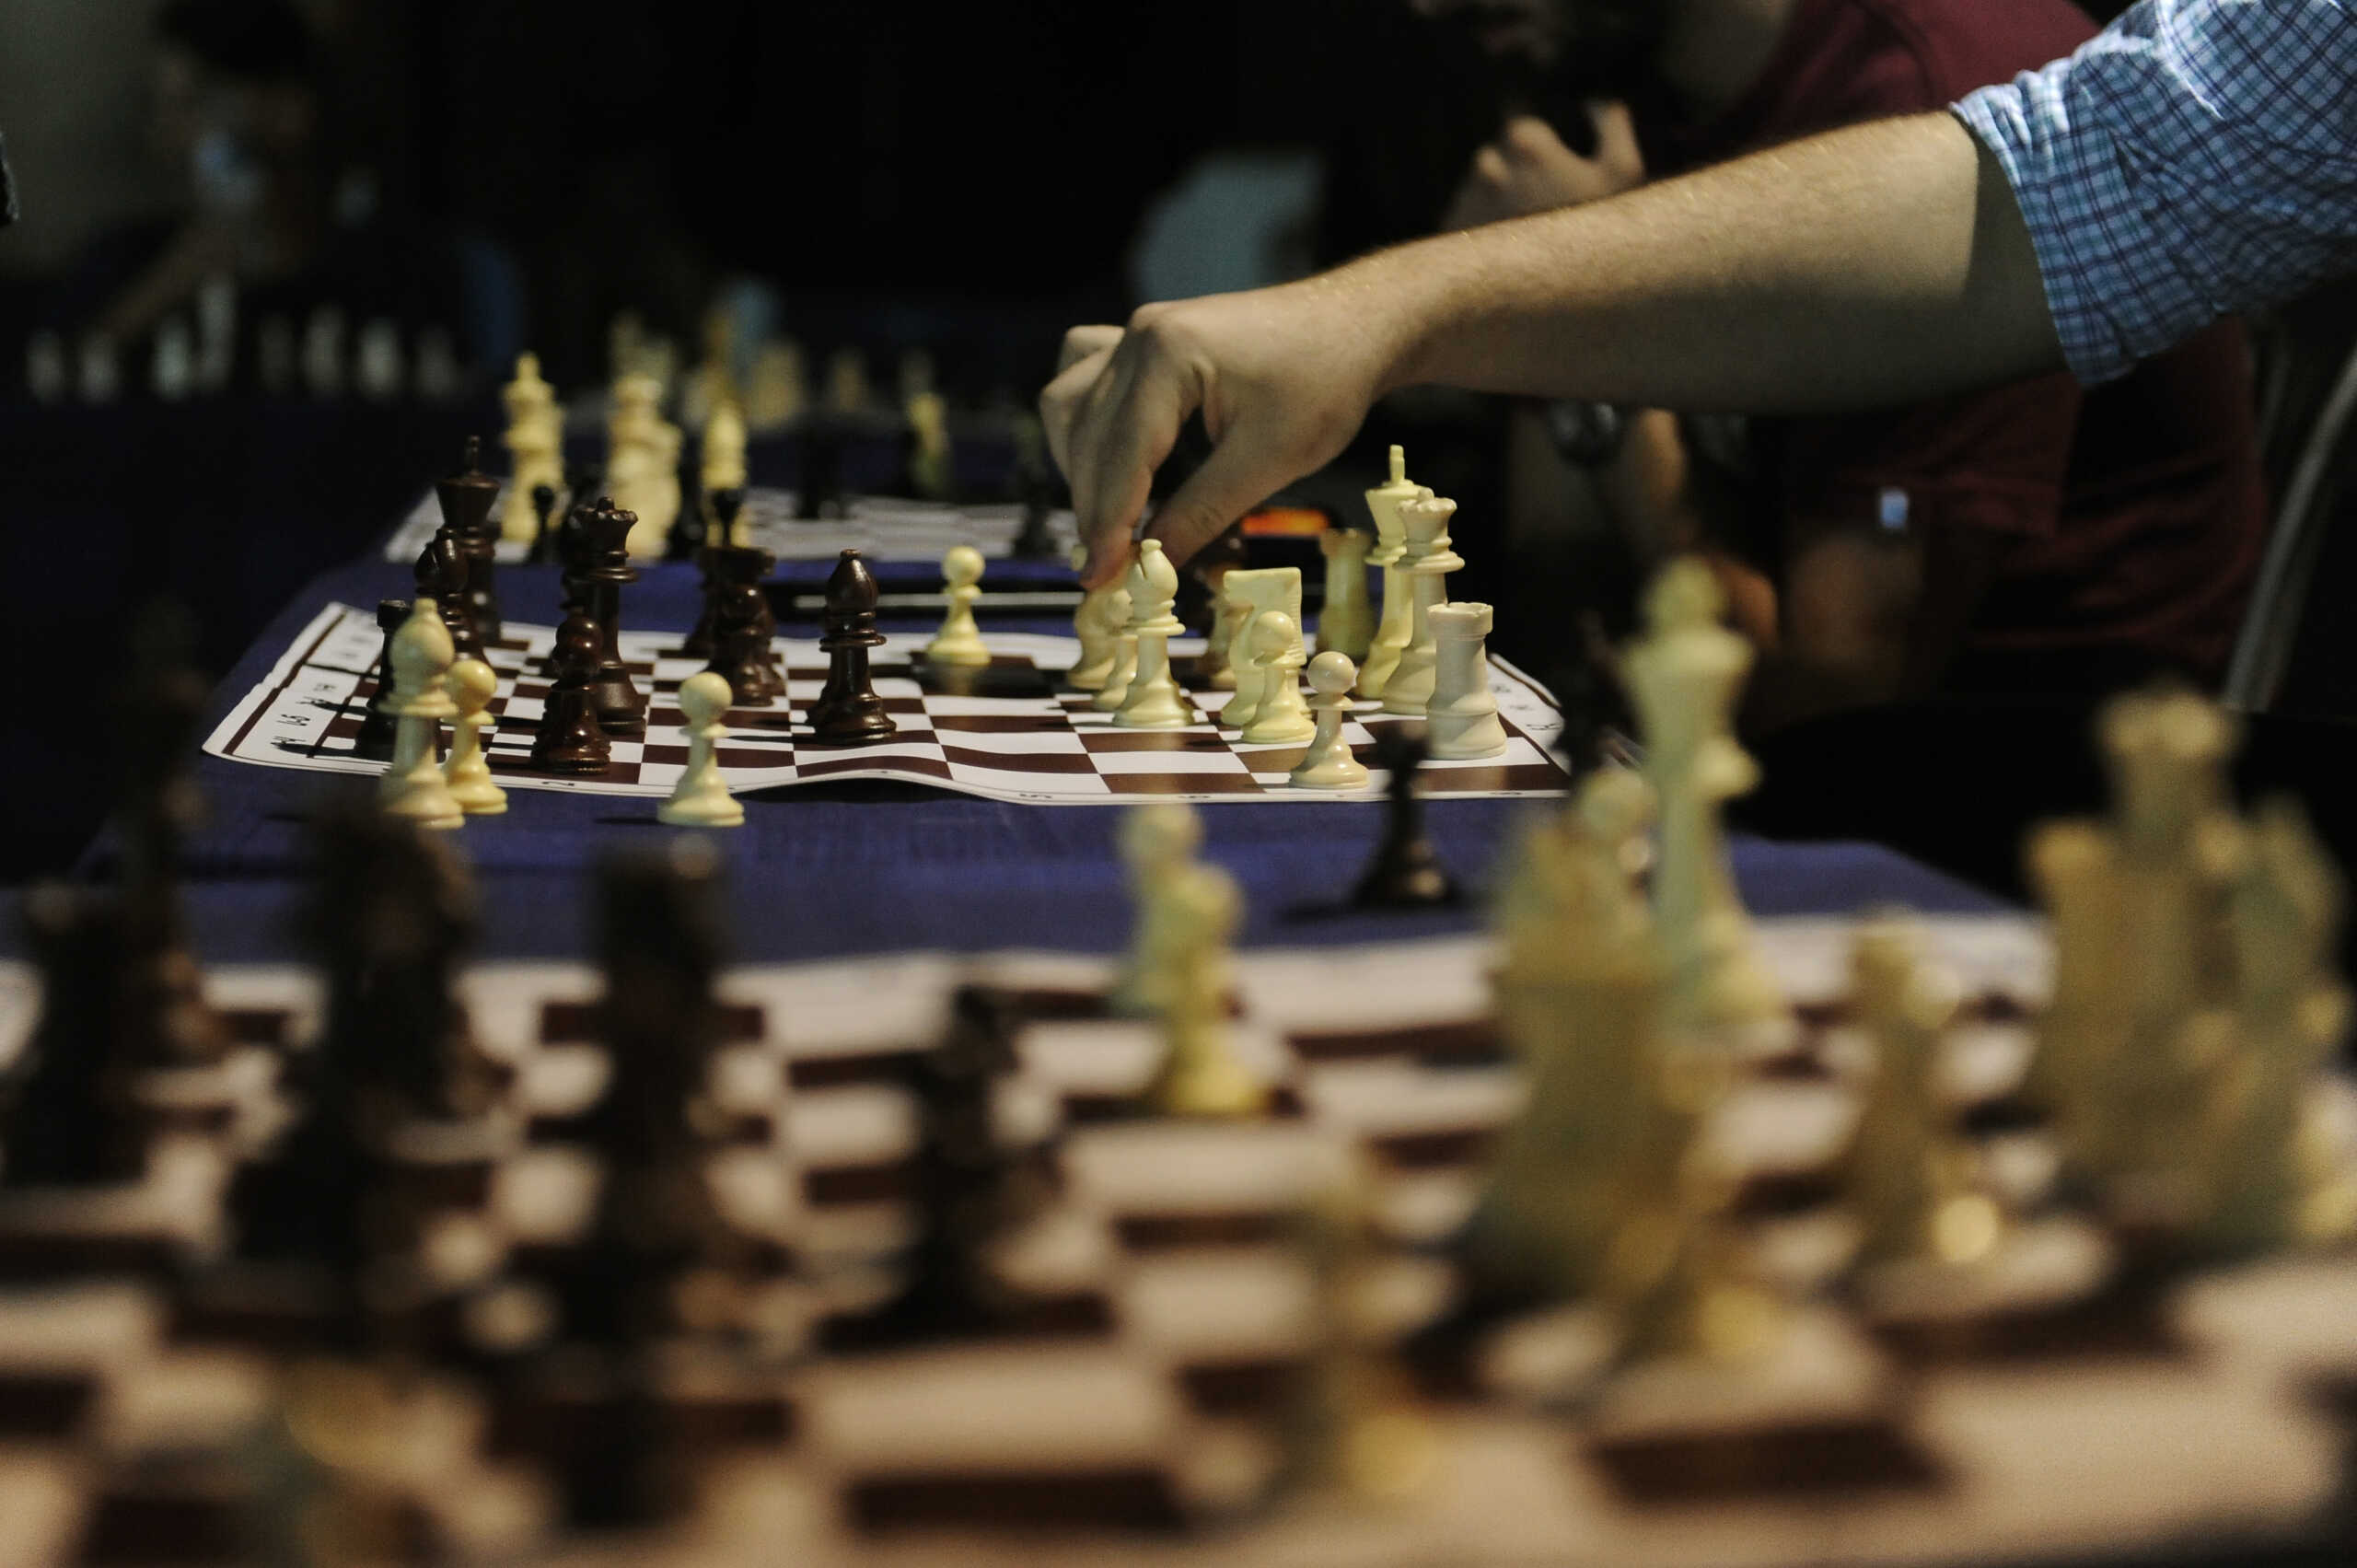 Σκάκι: Ένας 8χρονος νίκησε γκραν μάστερ στην Ελβετία κάνοντας παγκόσμιο ρεκόρ